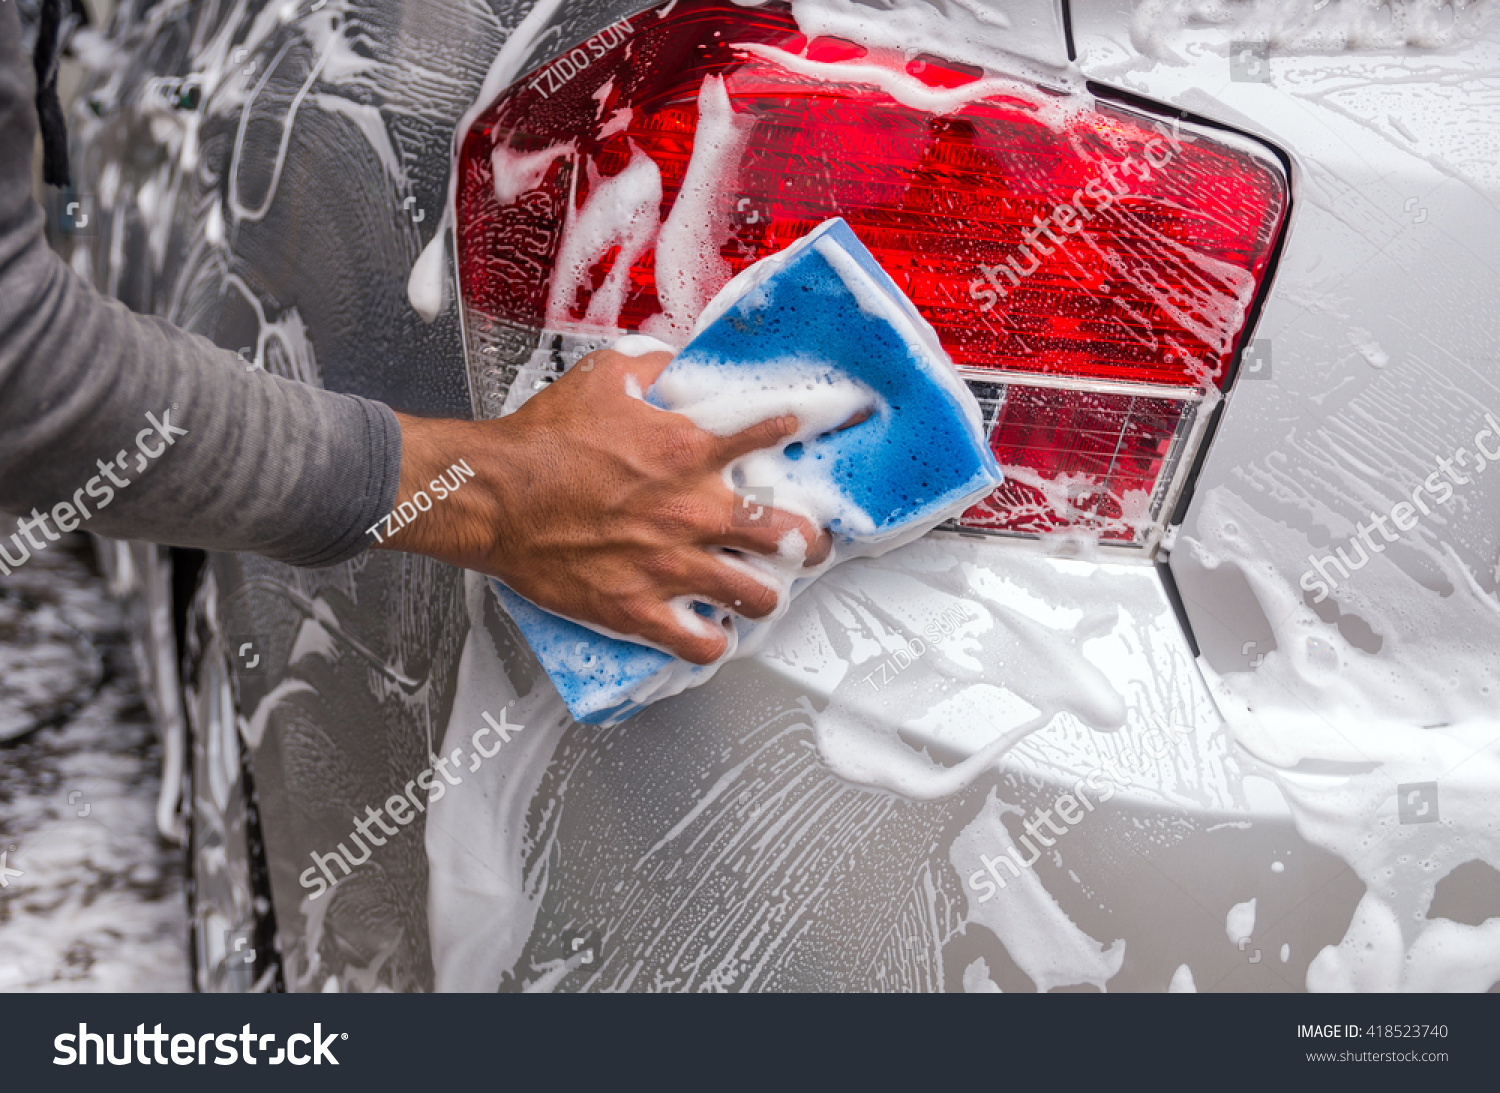 Wodonga Hand Carwash & Detailing | car wash | 2, Kendall St, Wodonga VIC 3690, Australia